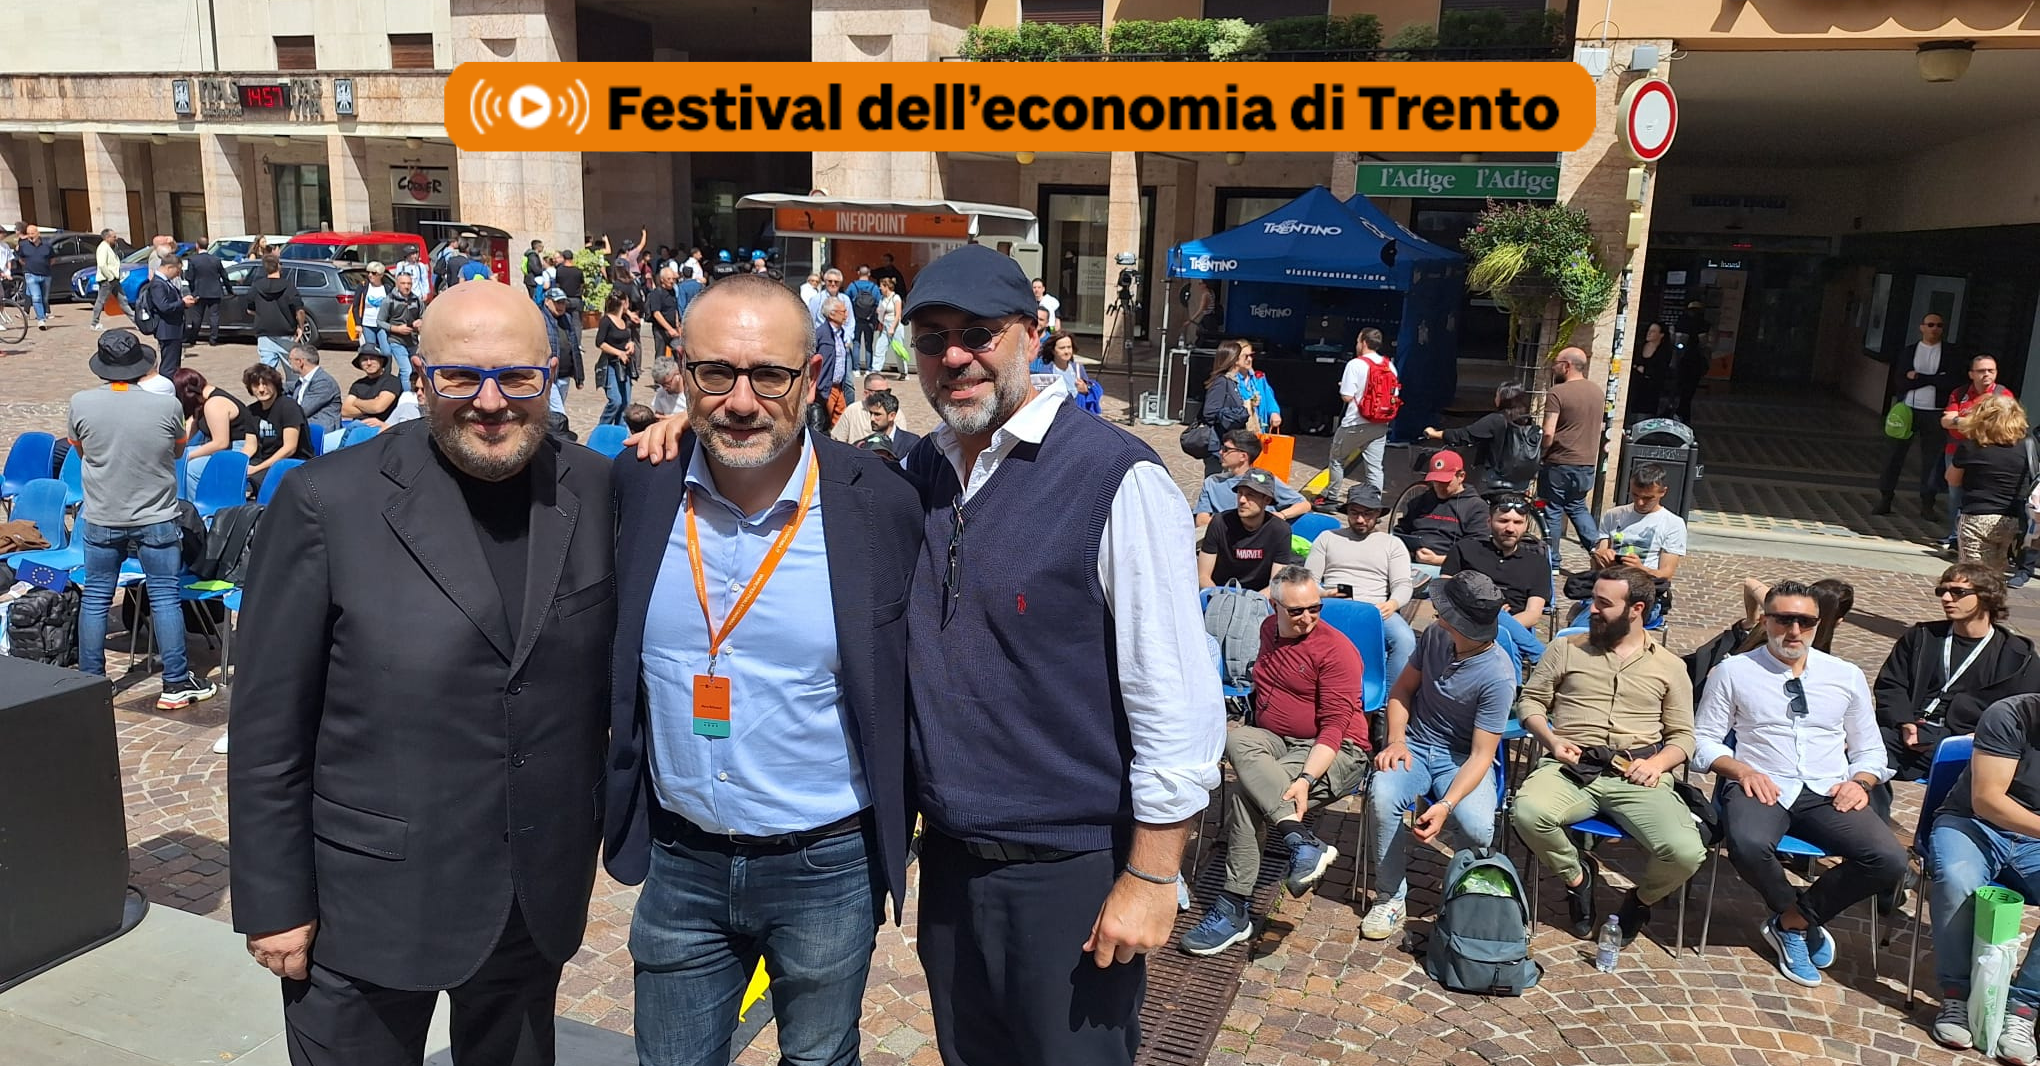 Convocati a Trento - in diretta dal Festival dell’economia di Trento